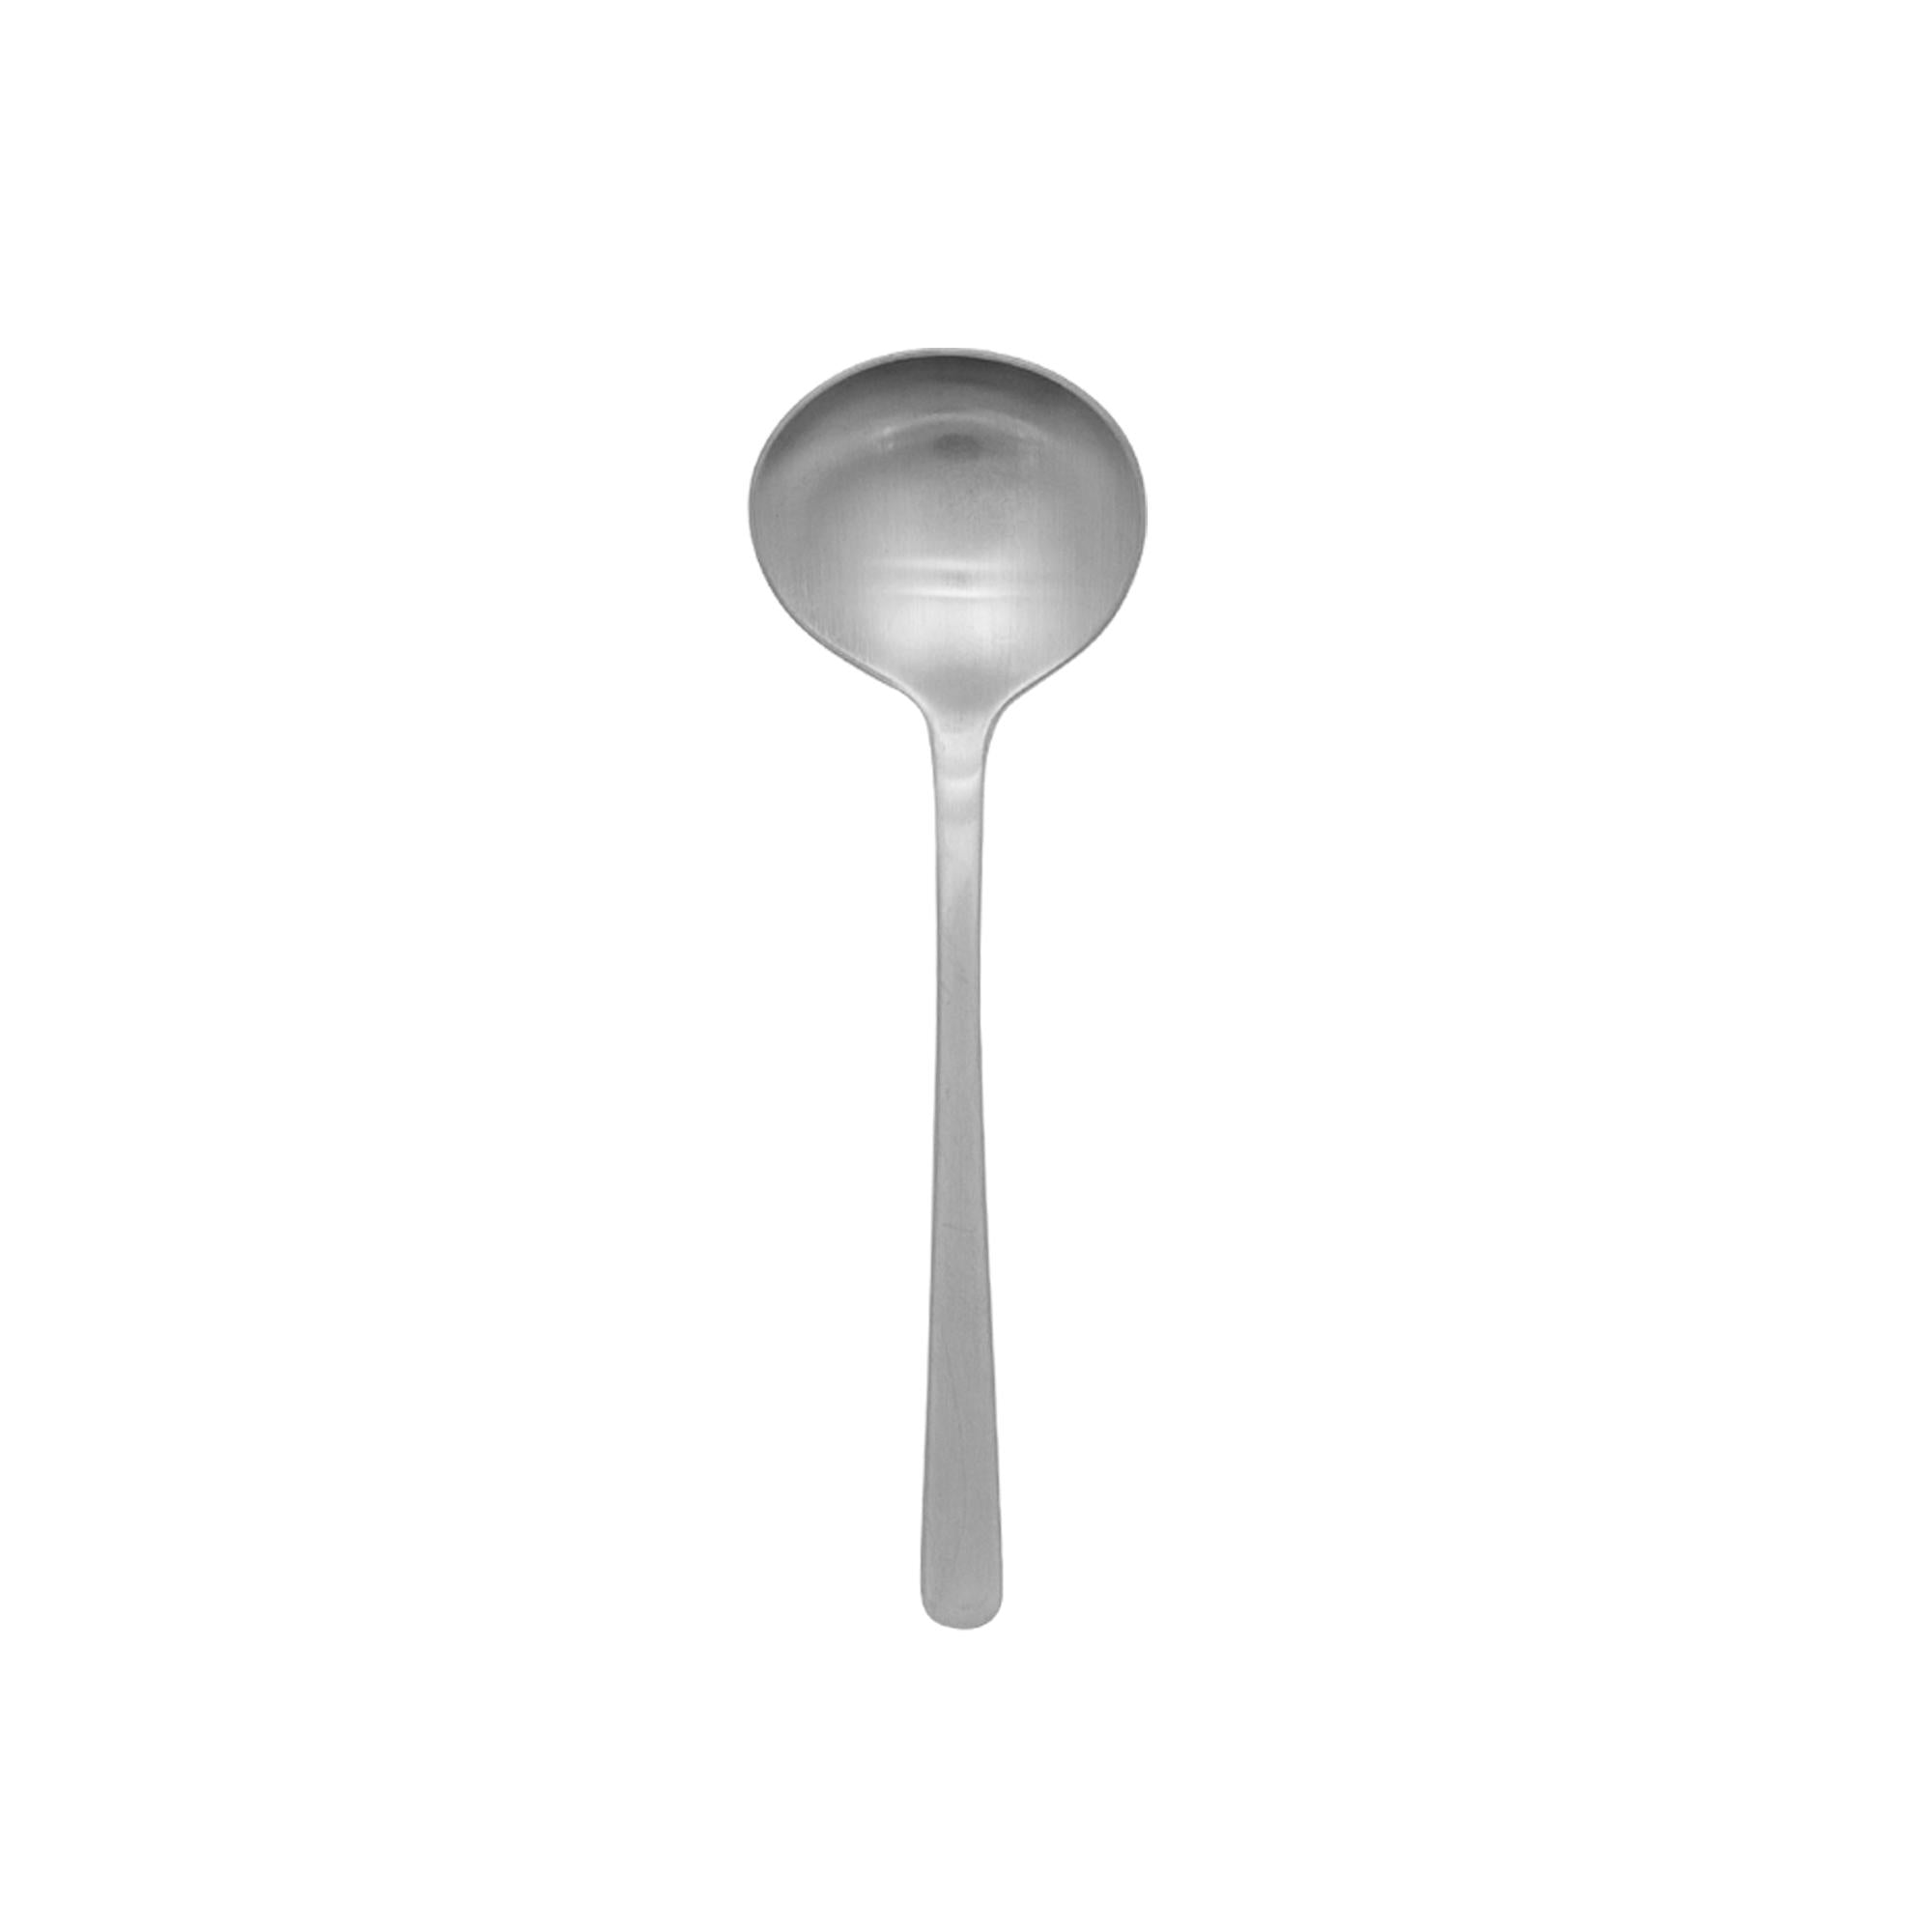 Kay Bojesen Grand Prix Soup/Broth Spoon, Matte Steel